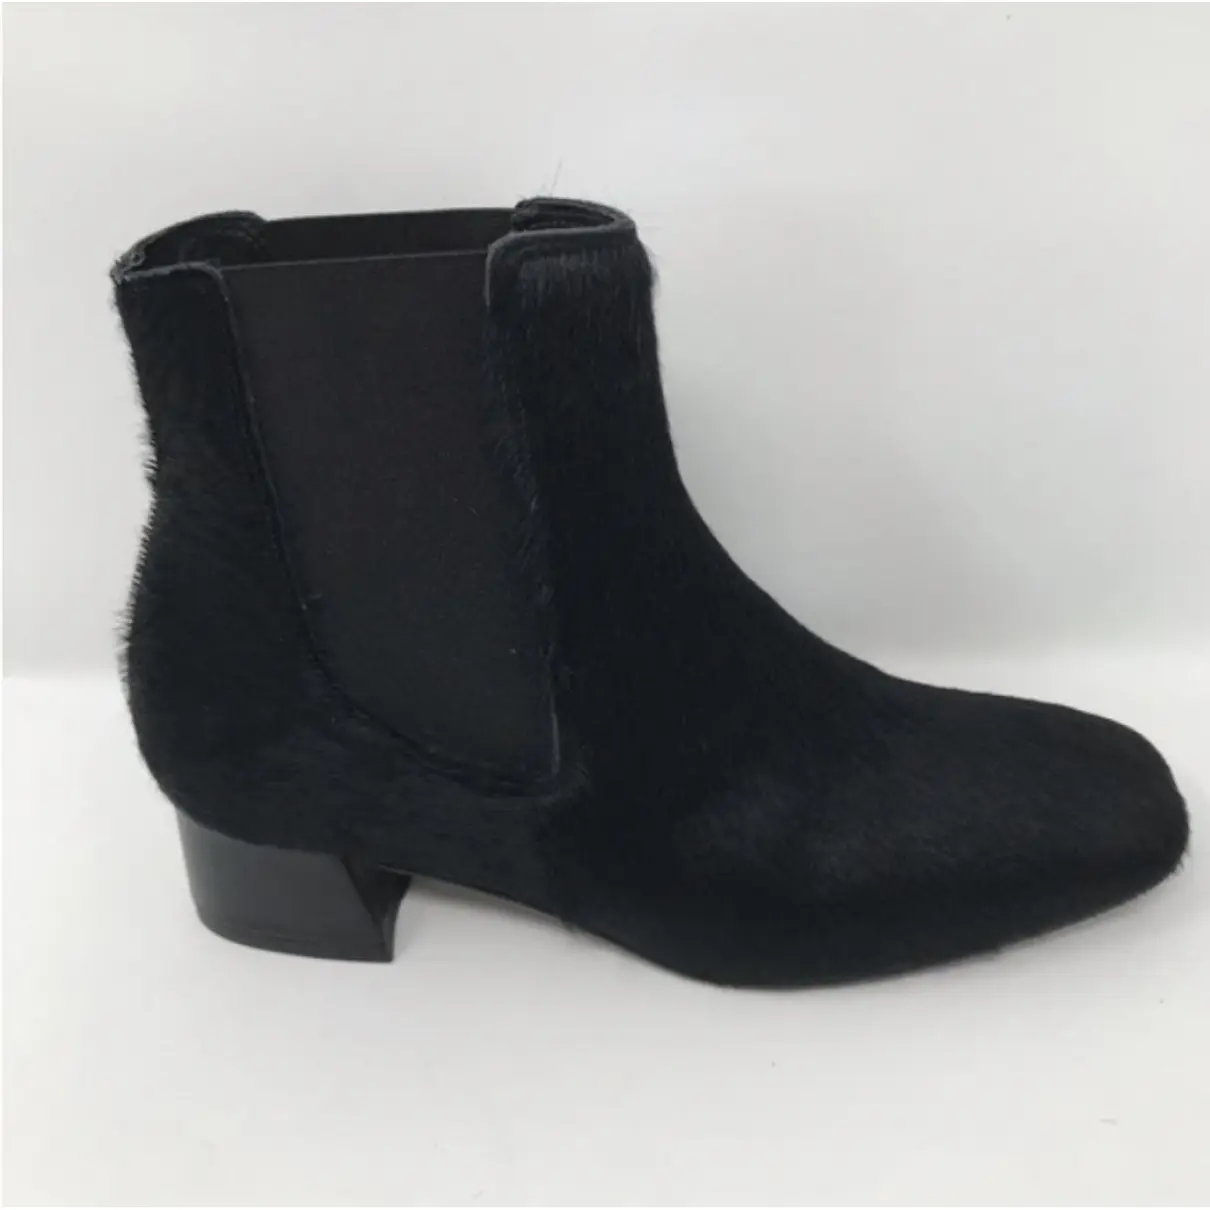 Buy Miista Ankle boots online